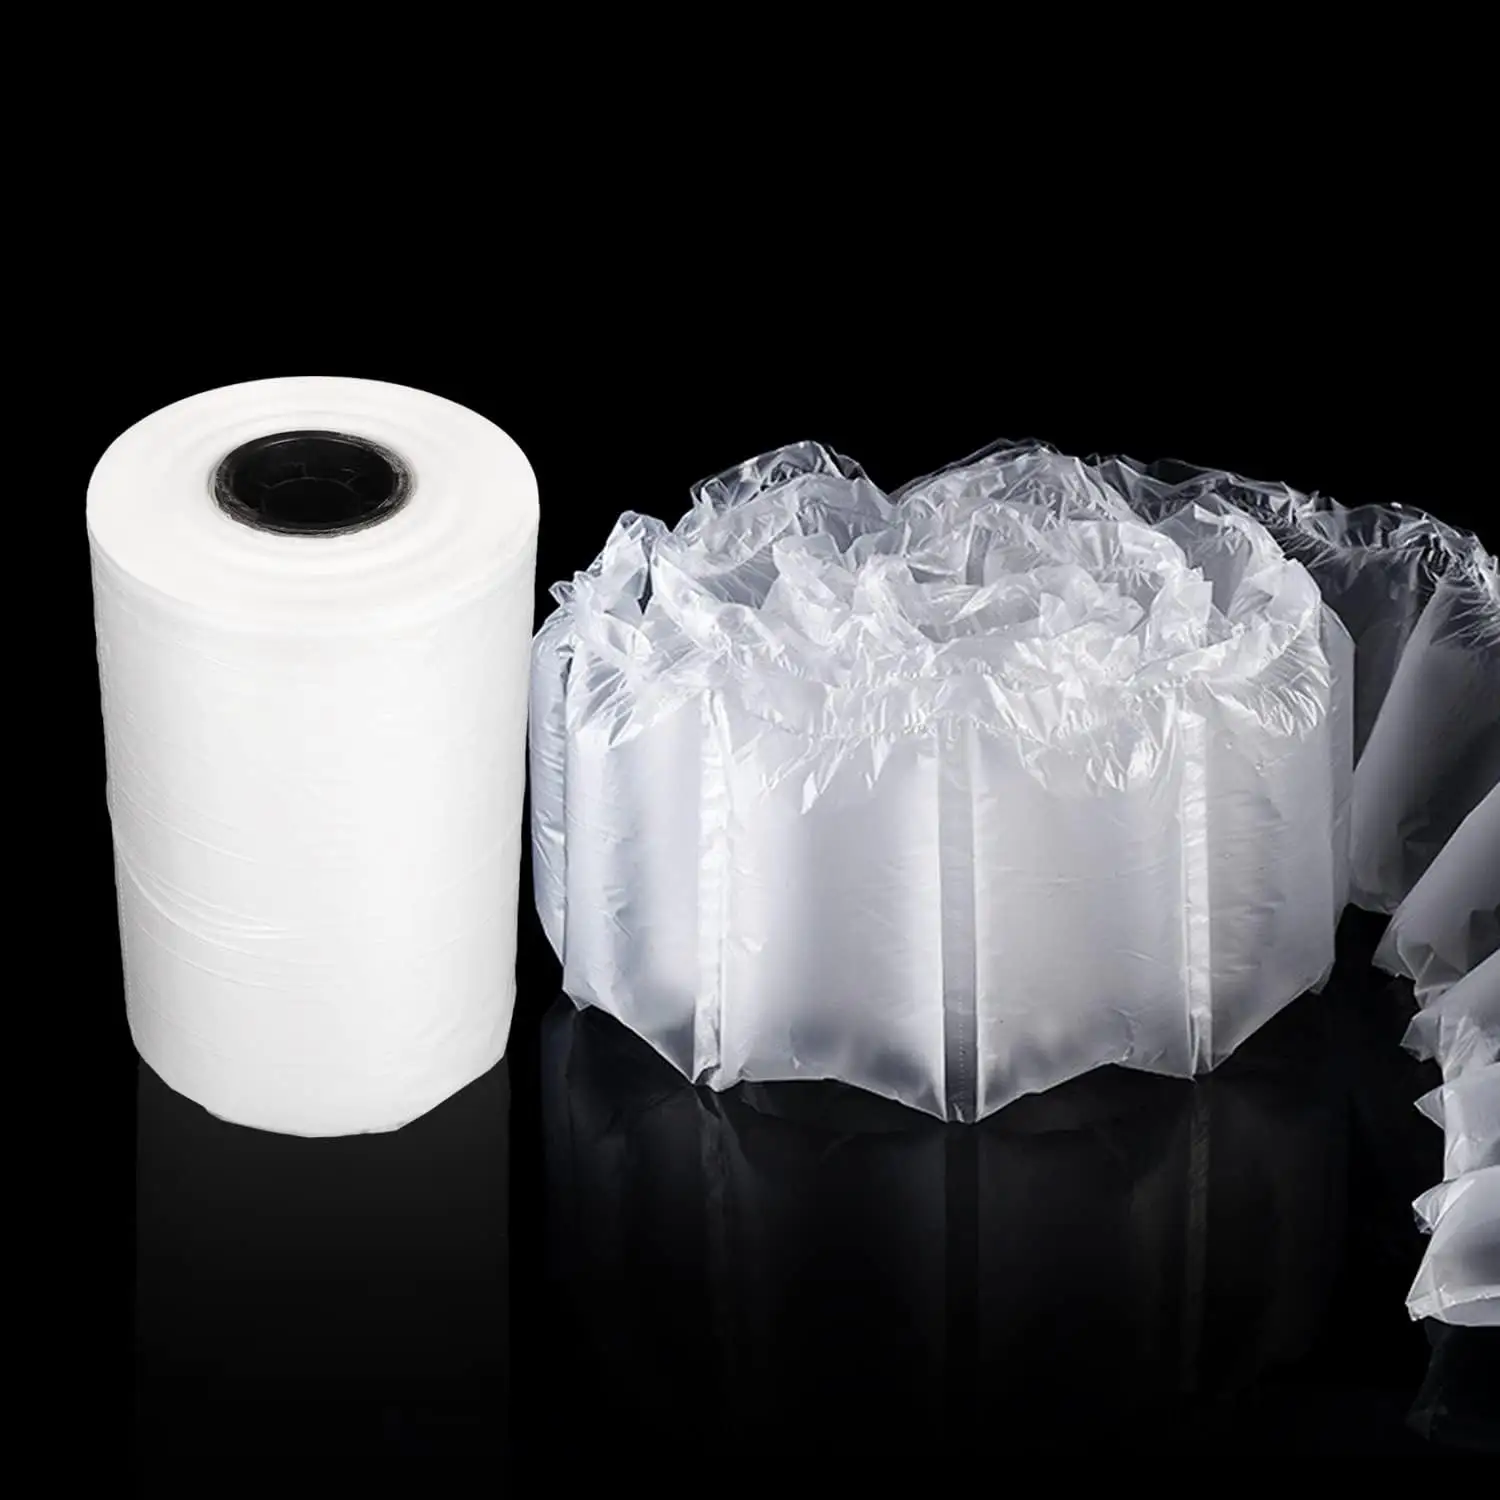 Filme de almofada de ar inflável sacos de bolha de ar envoltório embalagem rolo bolha envoltório sacos de transporte material de proteção e amortecimento